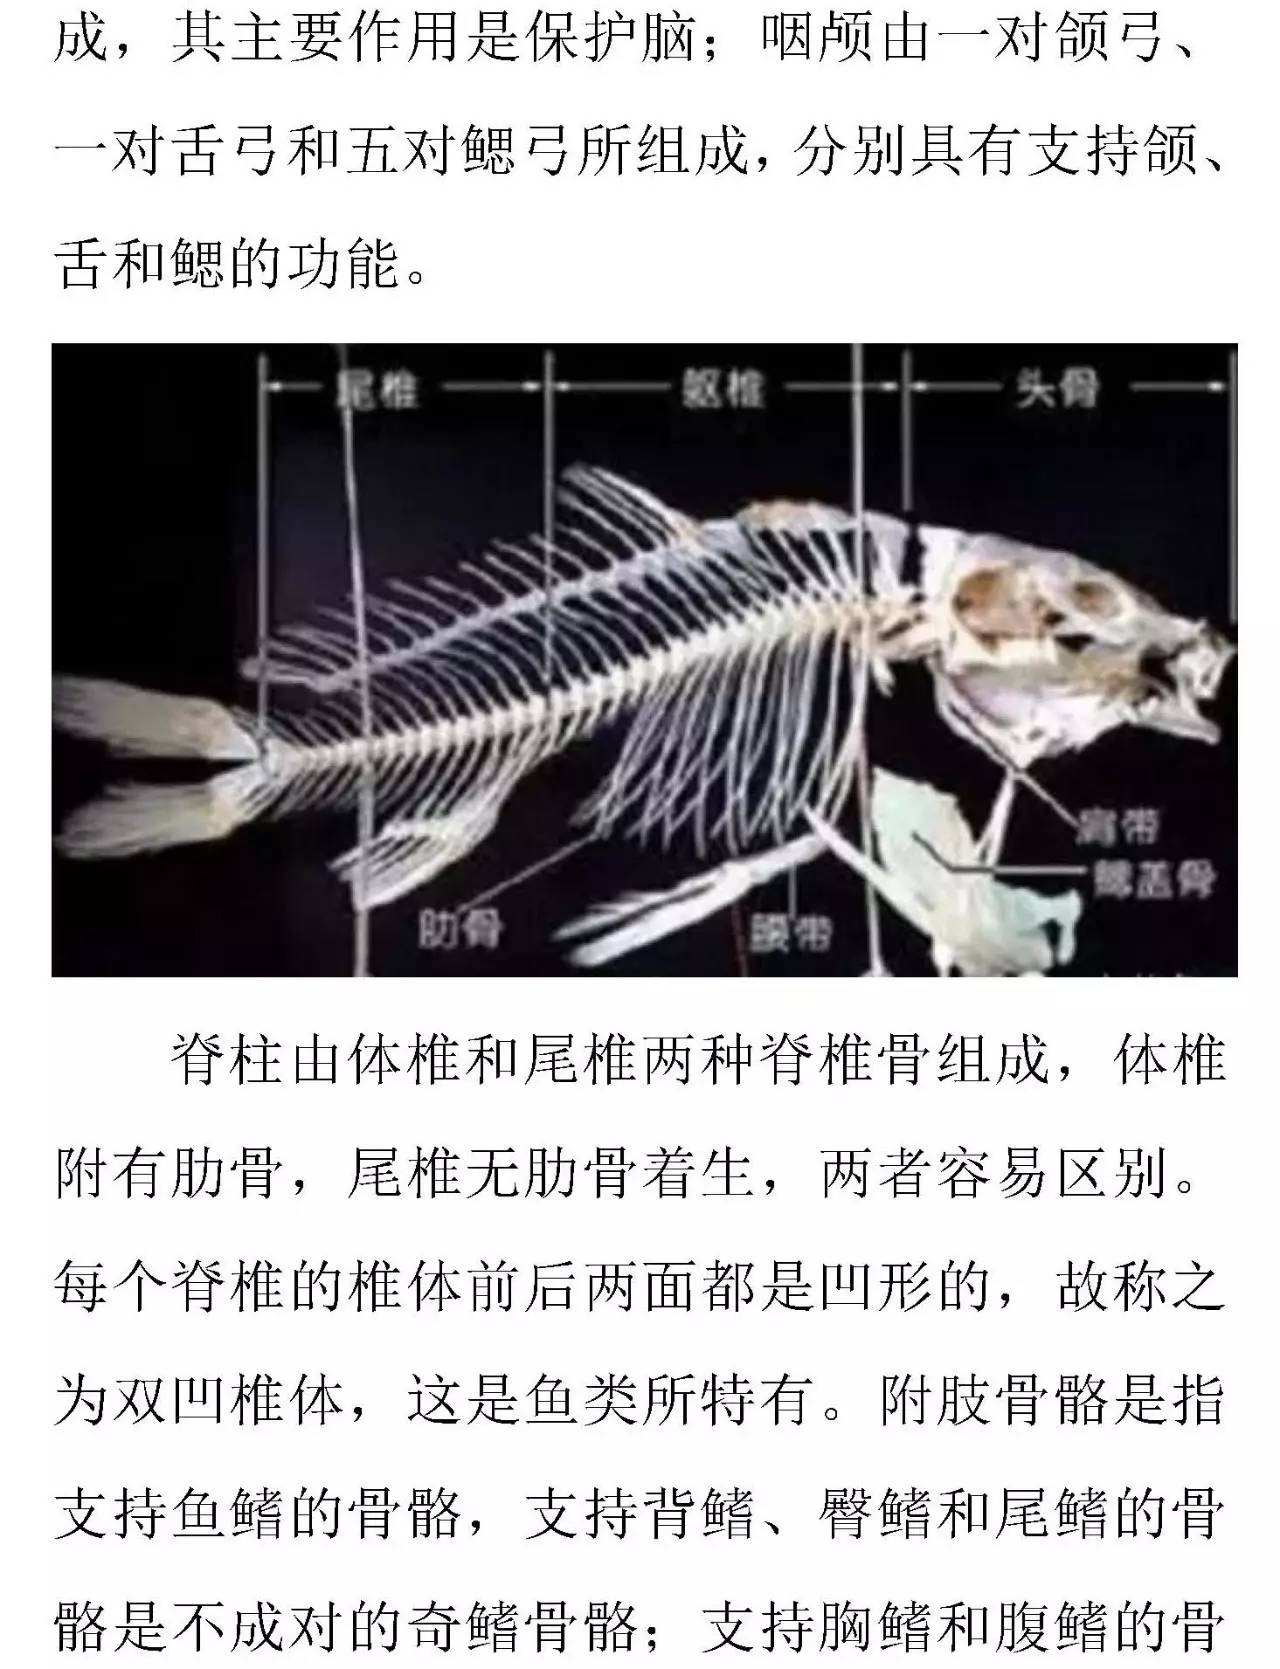 鲤鱼骨骼示意图图片